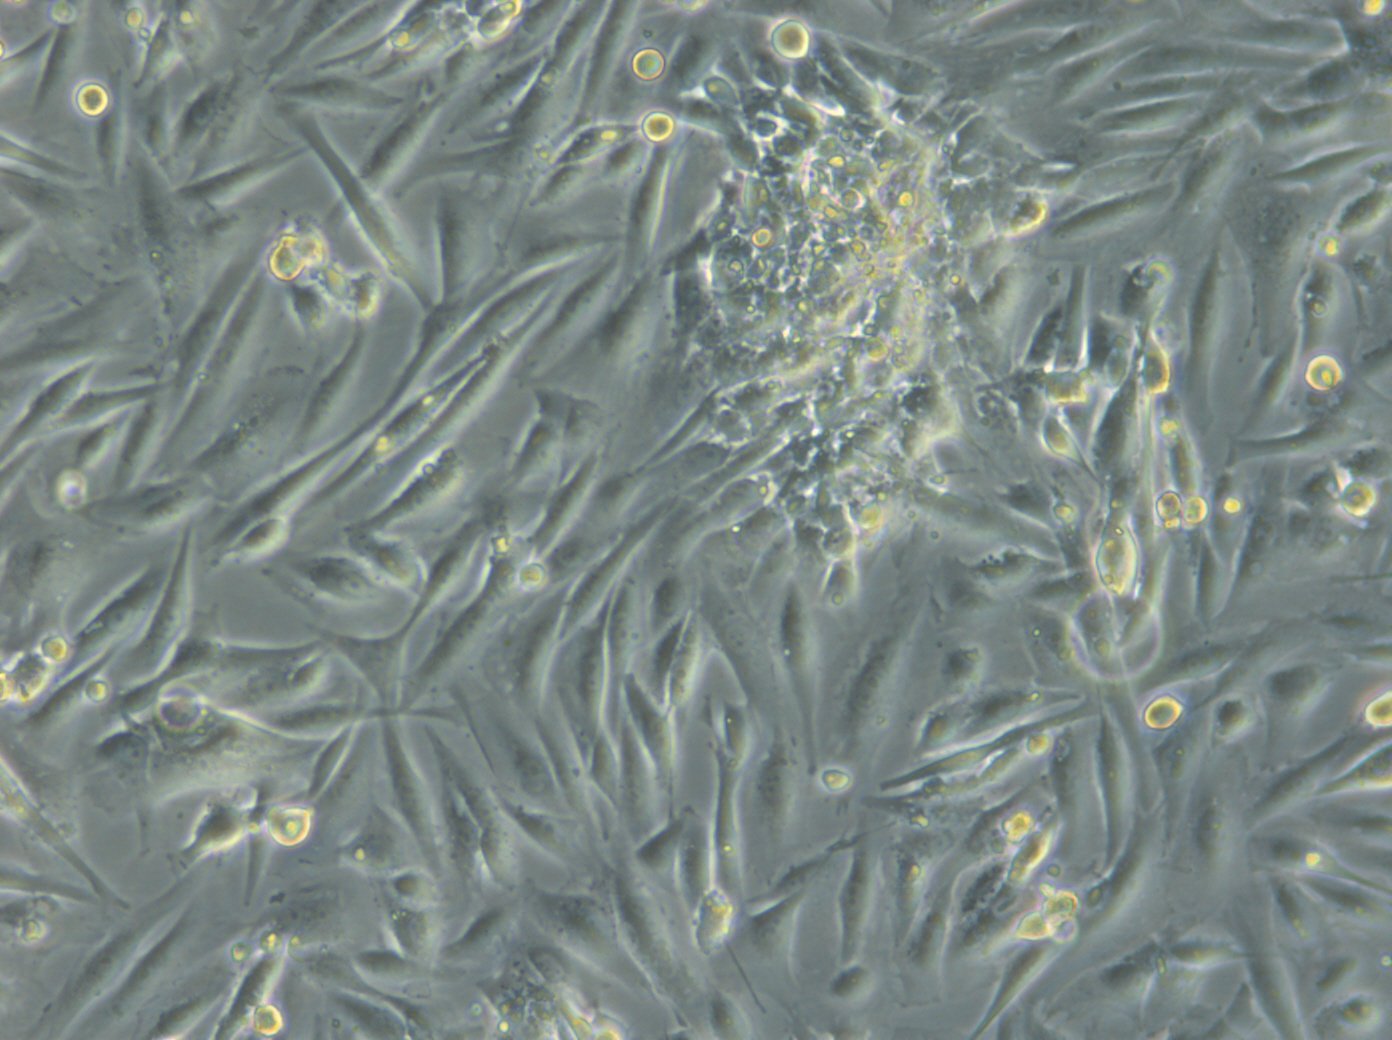 HROG17 T1 M1 Cells